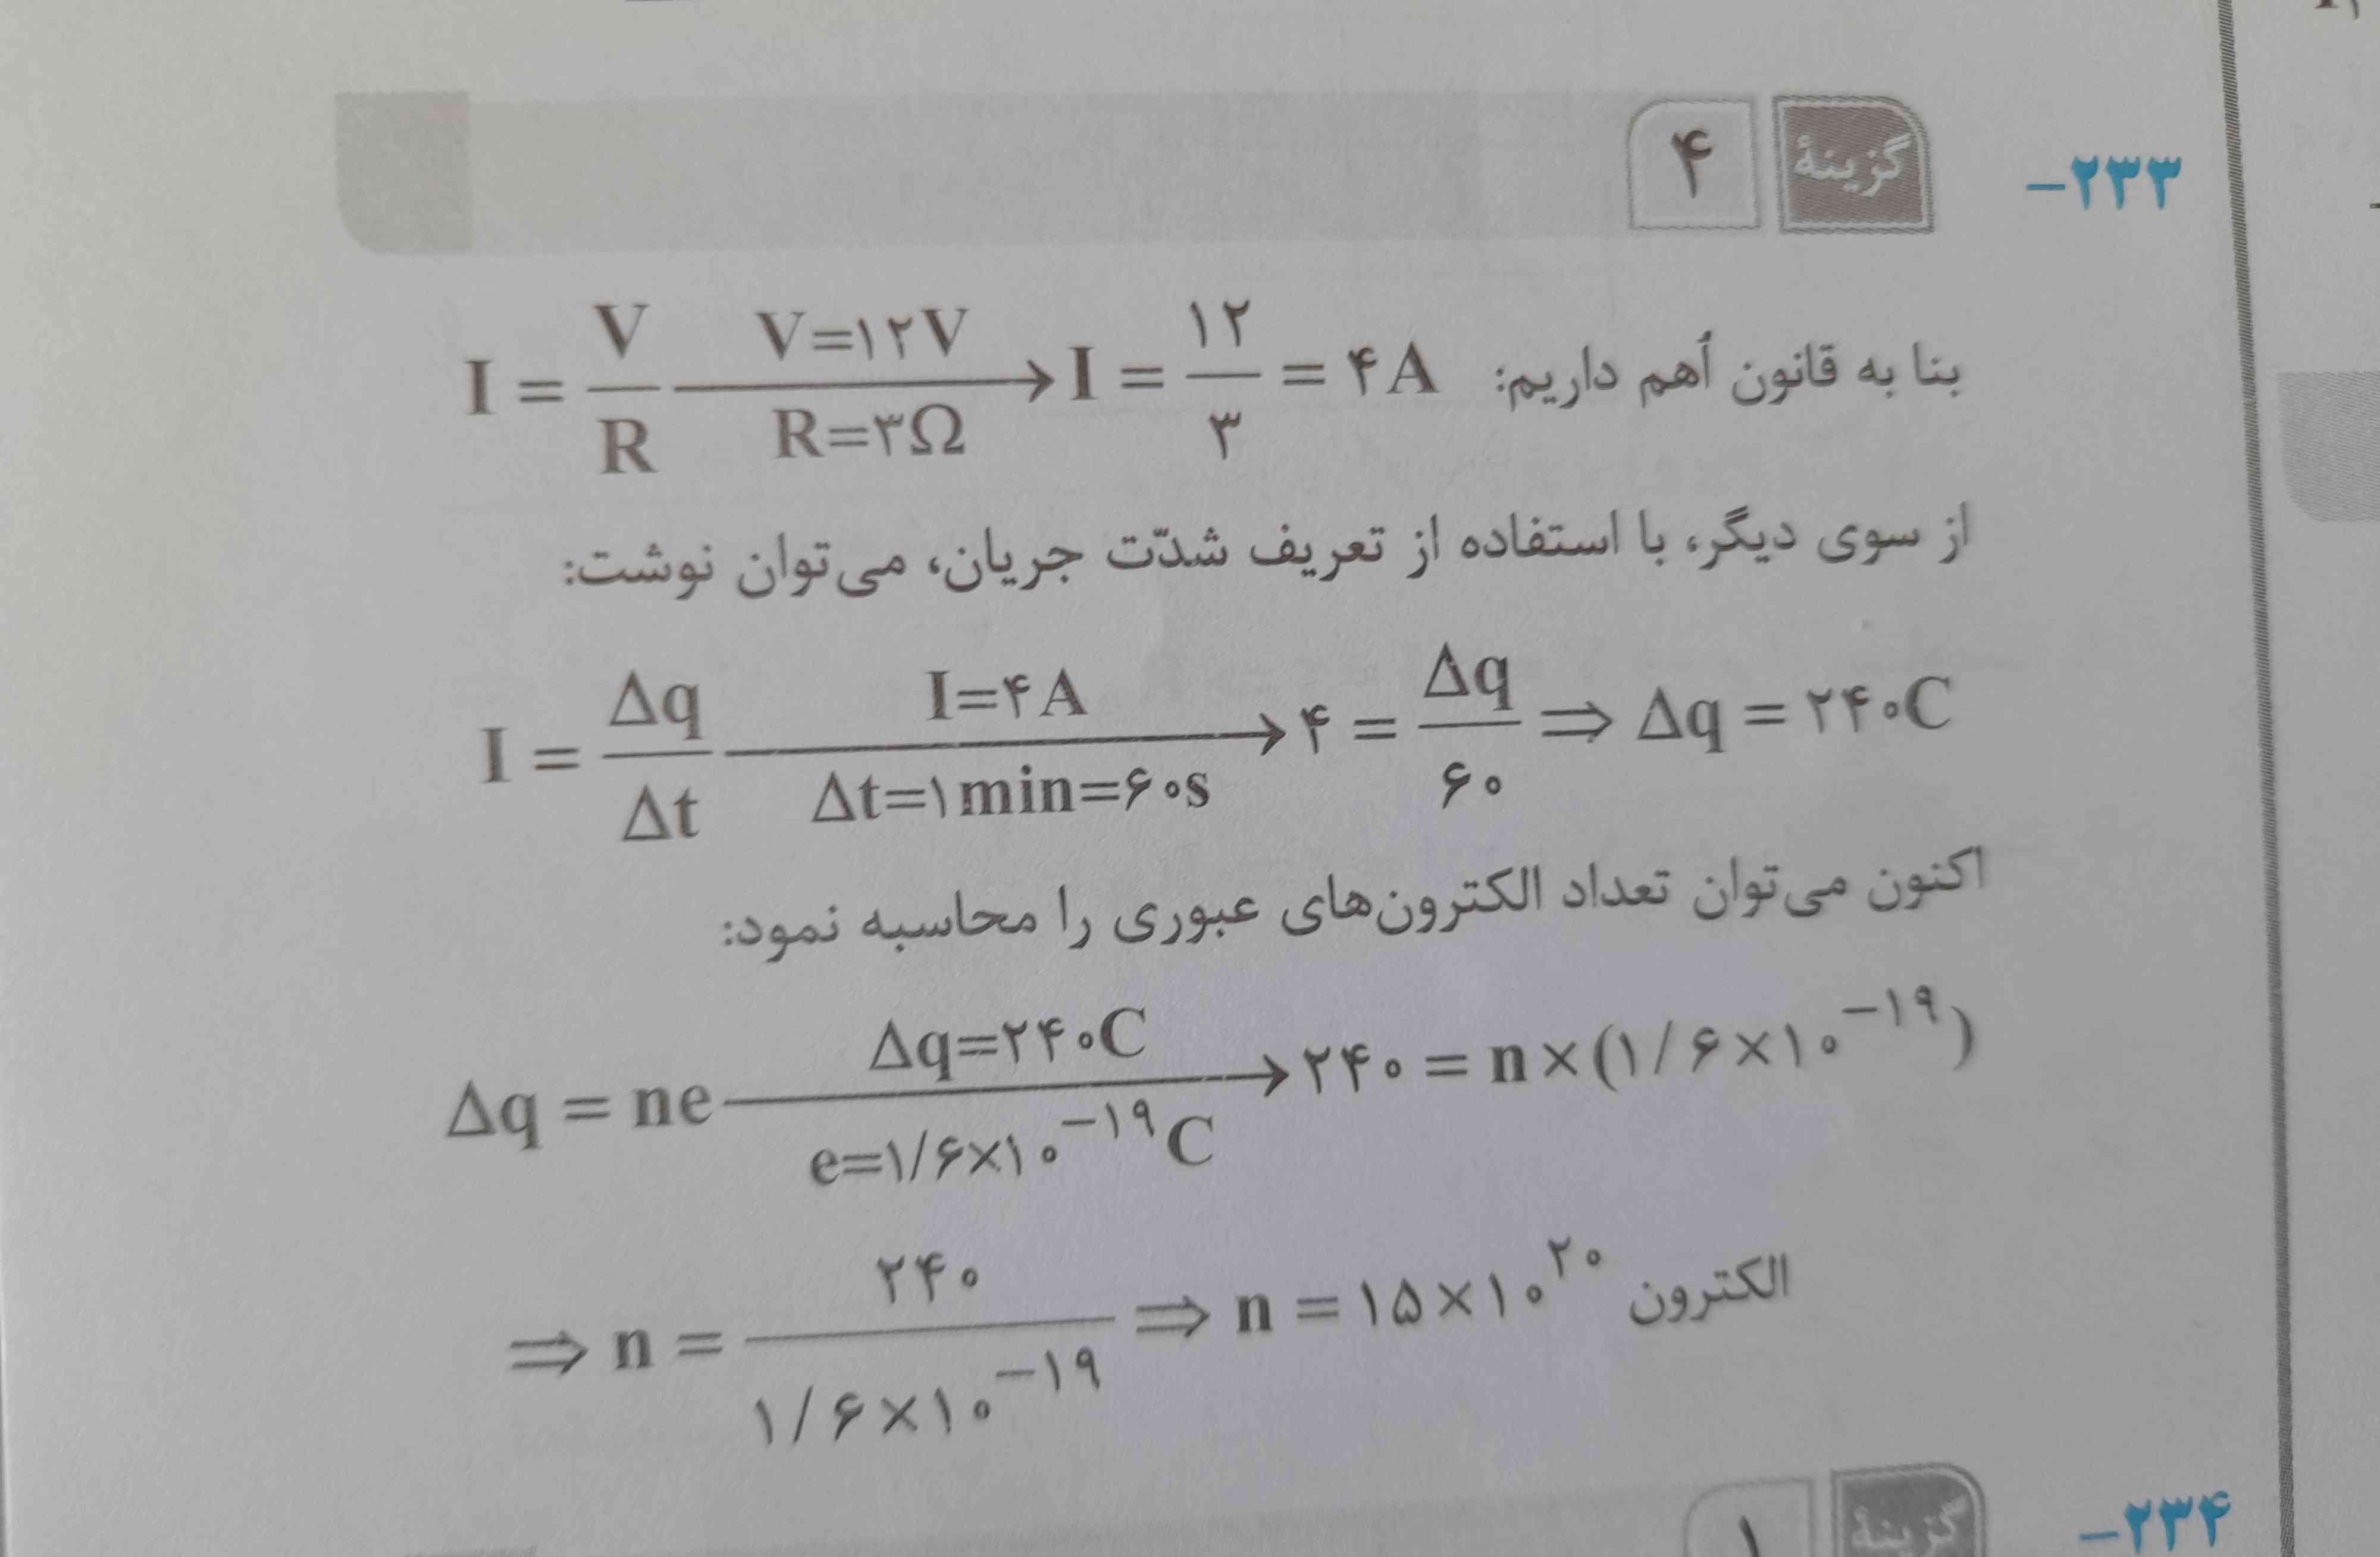 توی پاسخ نامه گفته جریان میشه v÷R
اما مگه بر طبق فرمول R=I÷v برای حساب کردن I نباید R×V بشه